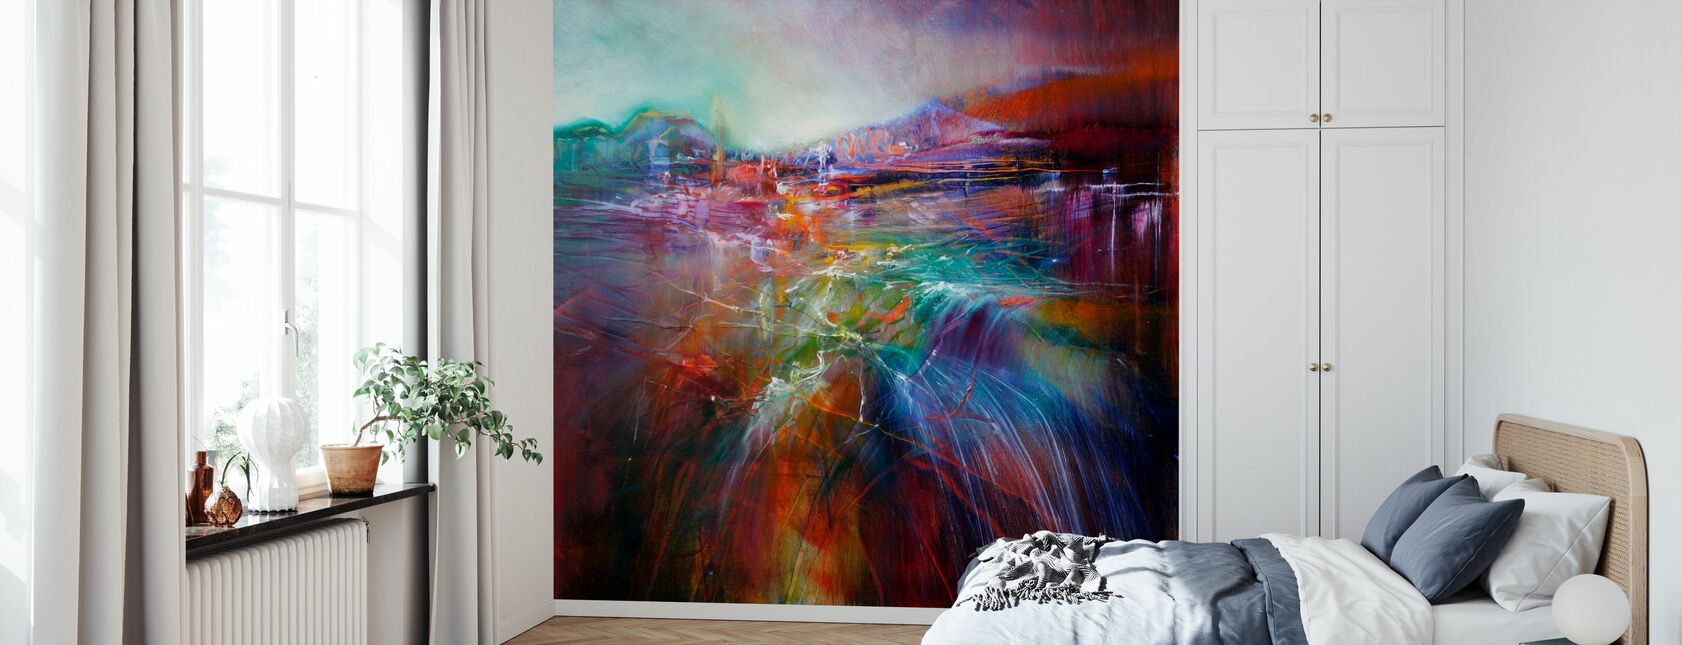 Evening Glow - Wallpaper - Bedroom